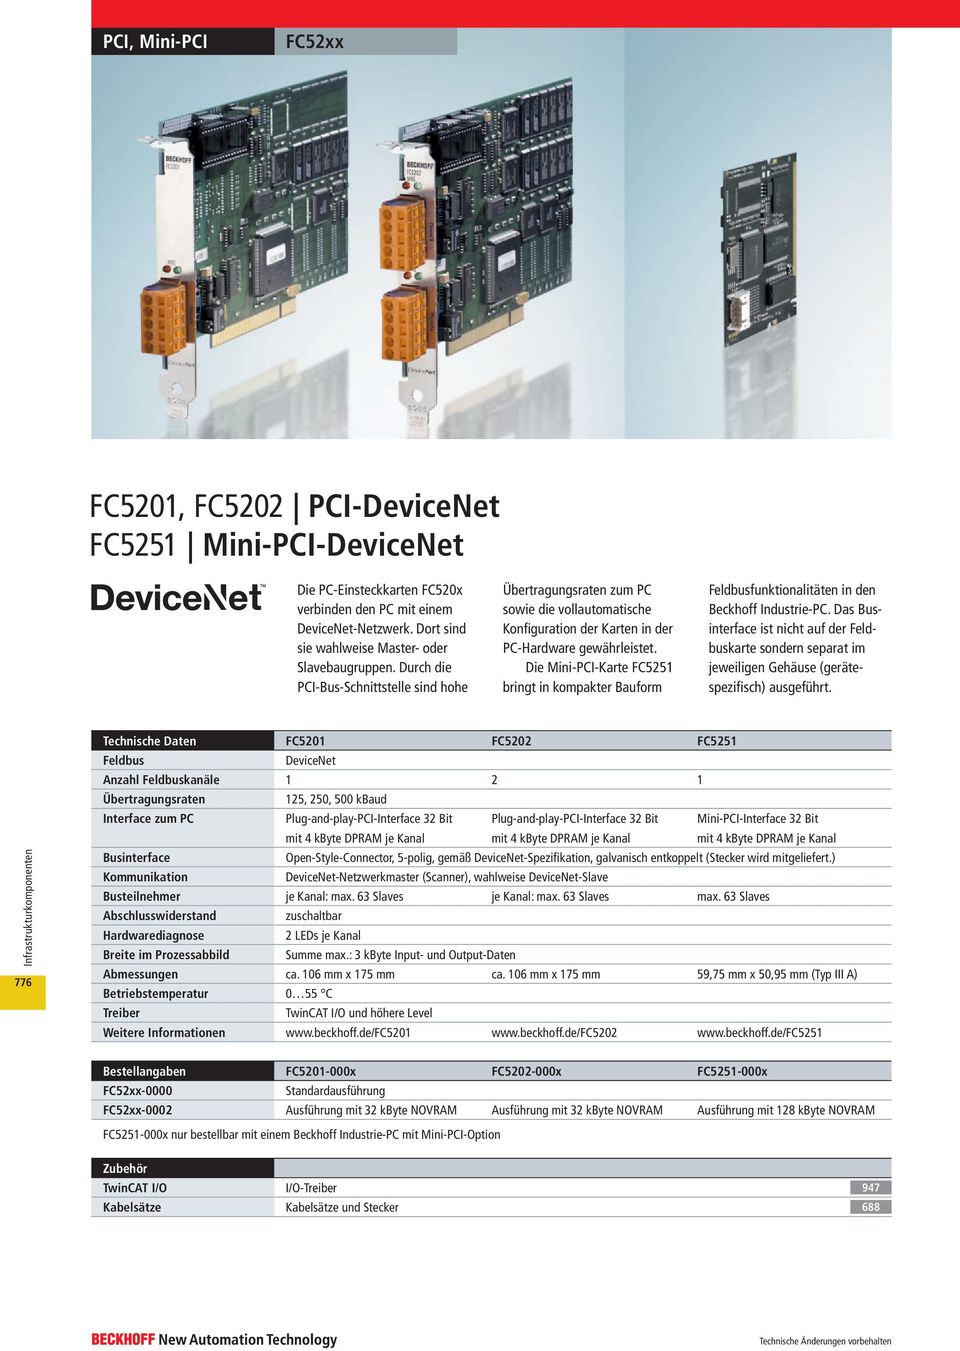 Die Mini-PCI-Karte FC5251 bringt in kompakter Bauform Feldbusfunktionalitäten in den Beckhoff Industrie-PC.